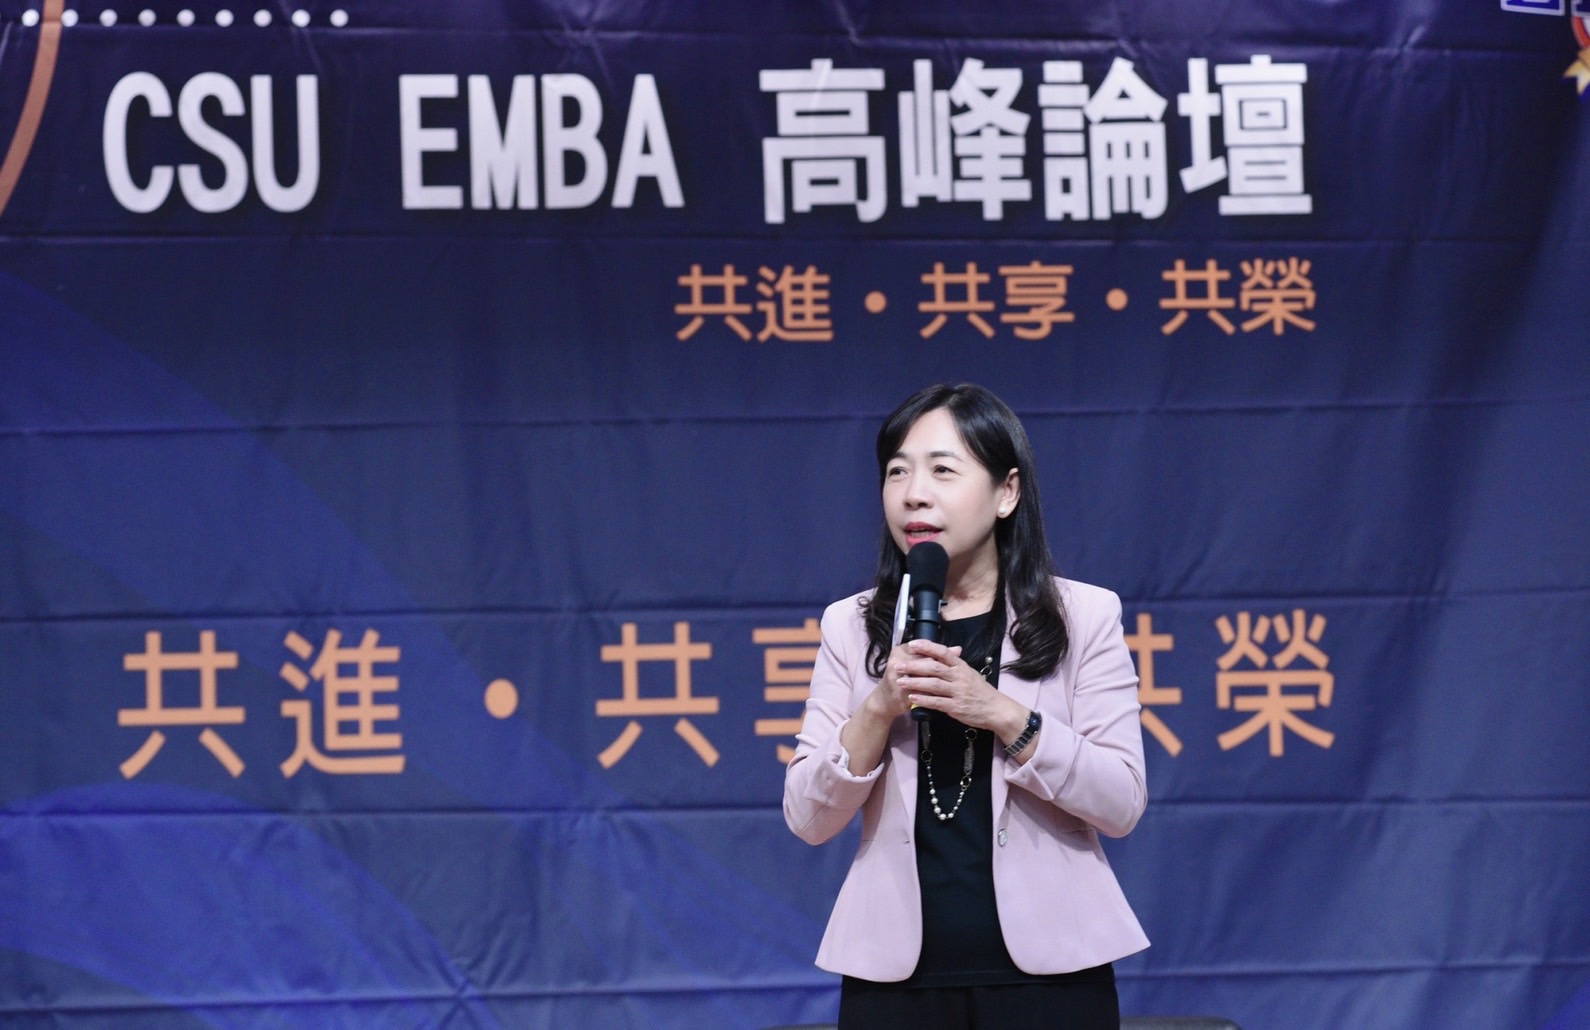 中華兩岸EMBA聯合會(CSU) 2022 CSU EMBA高峰論壇圓滿成功